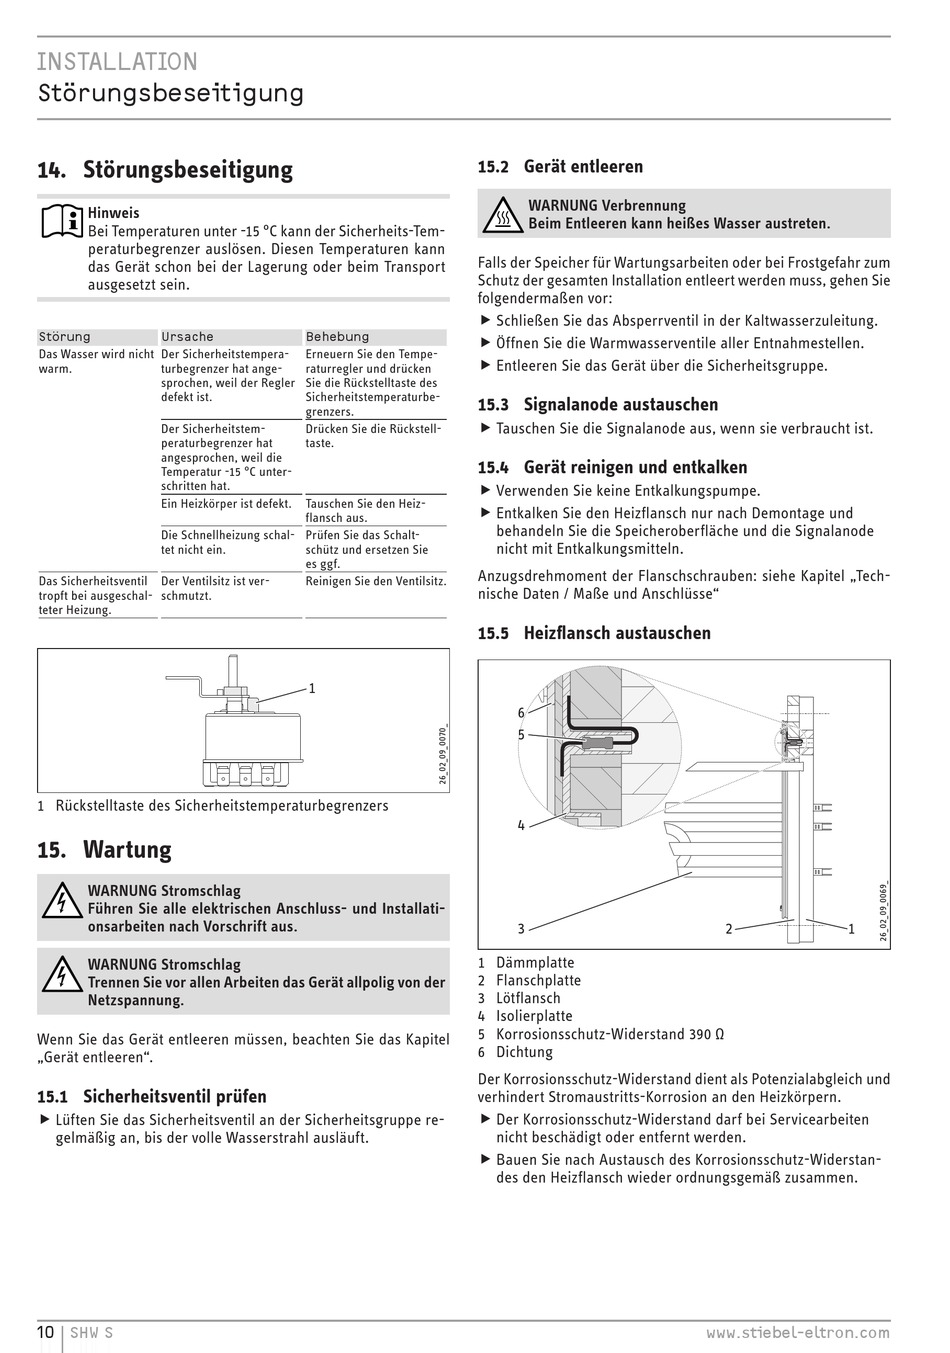 Störungsbeseitigung; Sicherheitsventil Prüfen; Gerät Entleeren - STIEBEL 200 S Und Installation [Seite 10] | ManualsLib